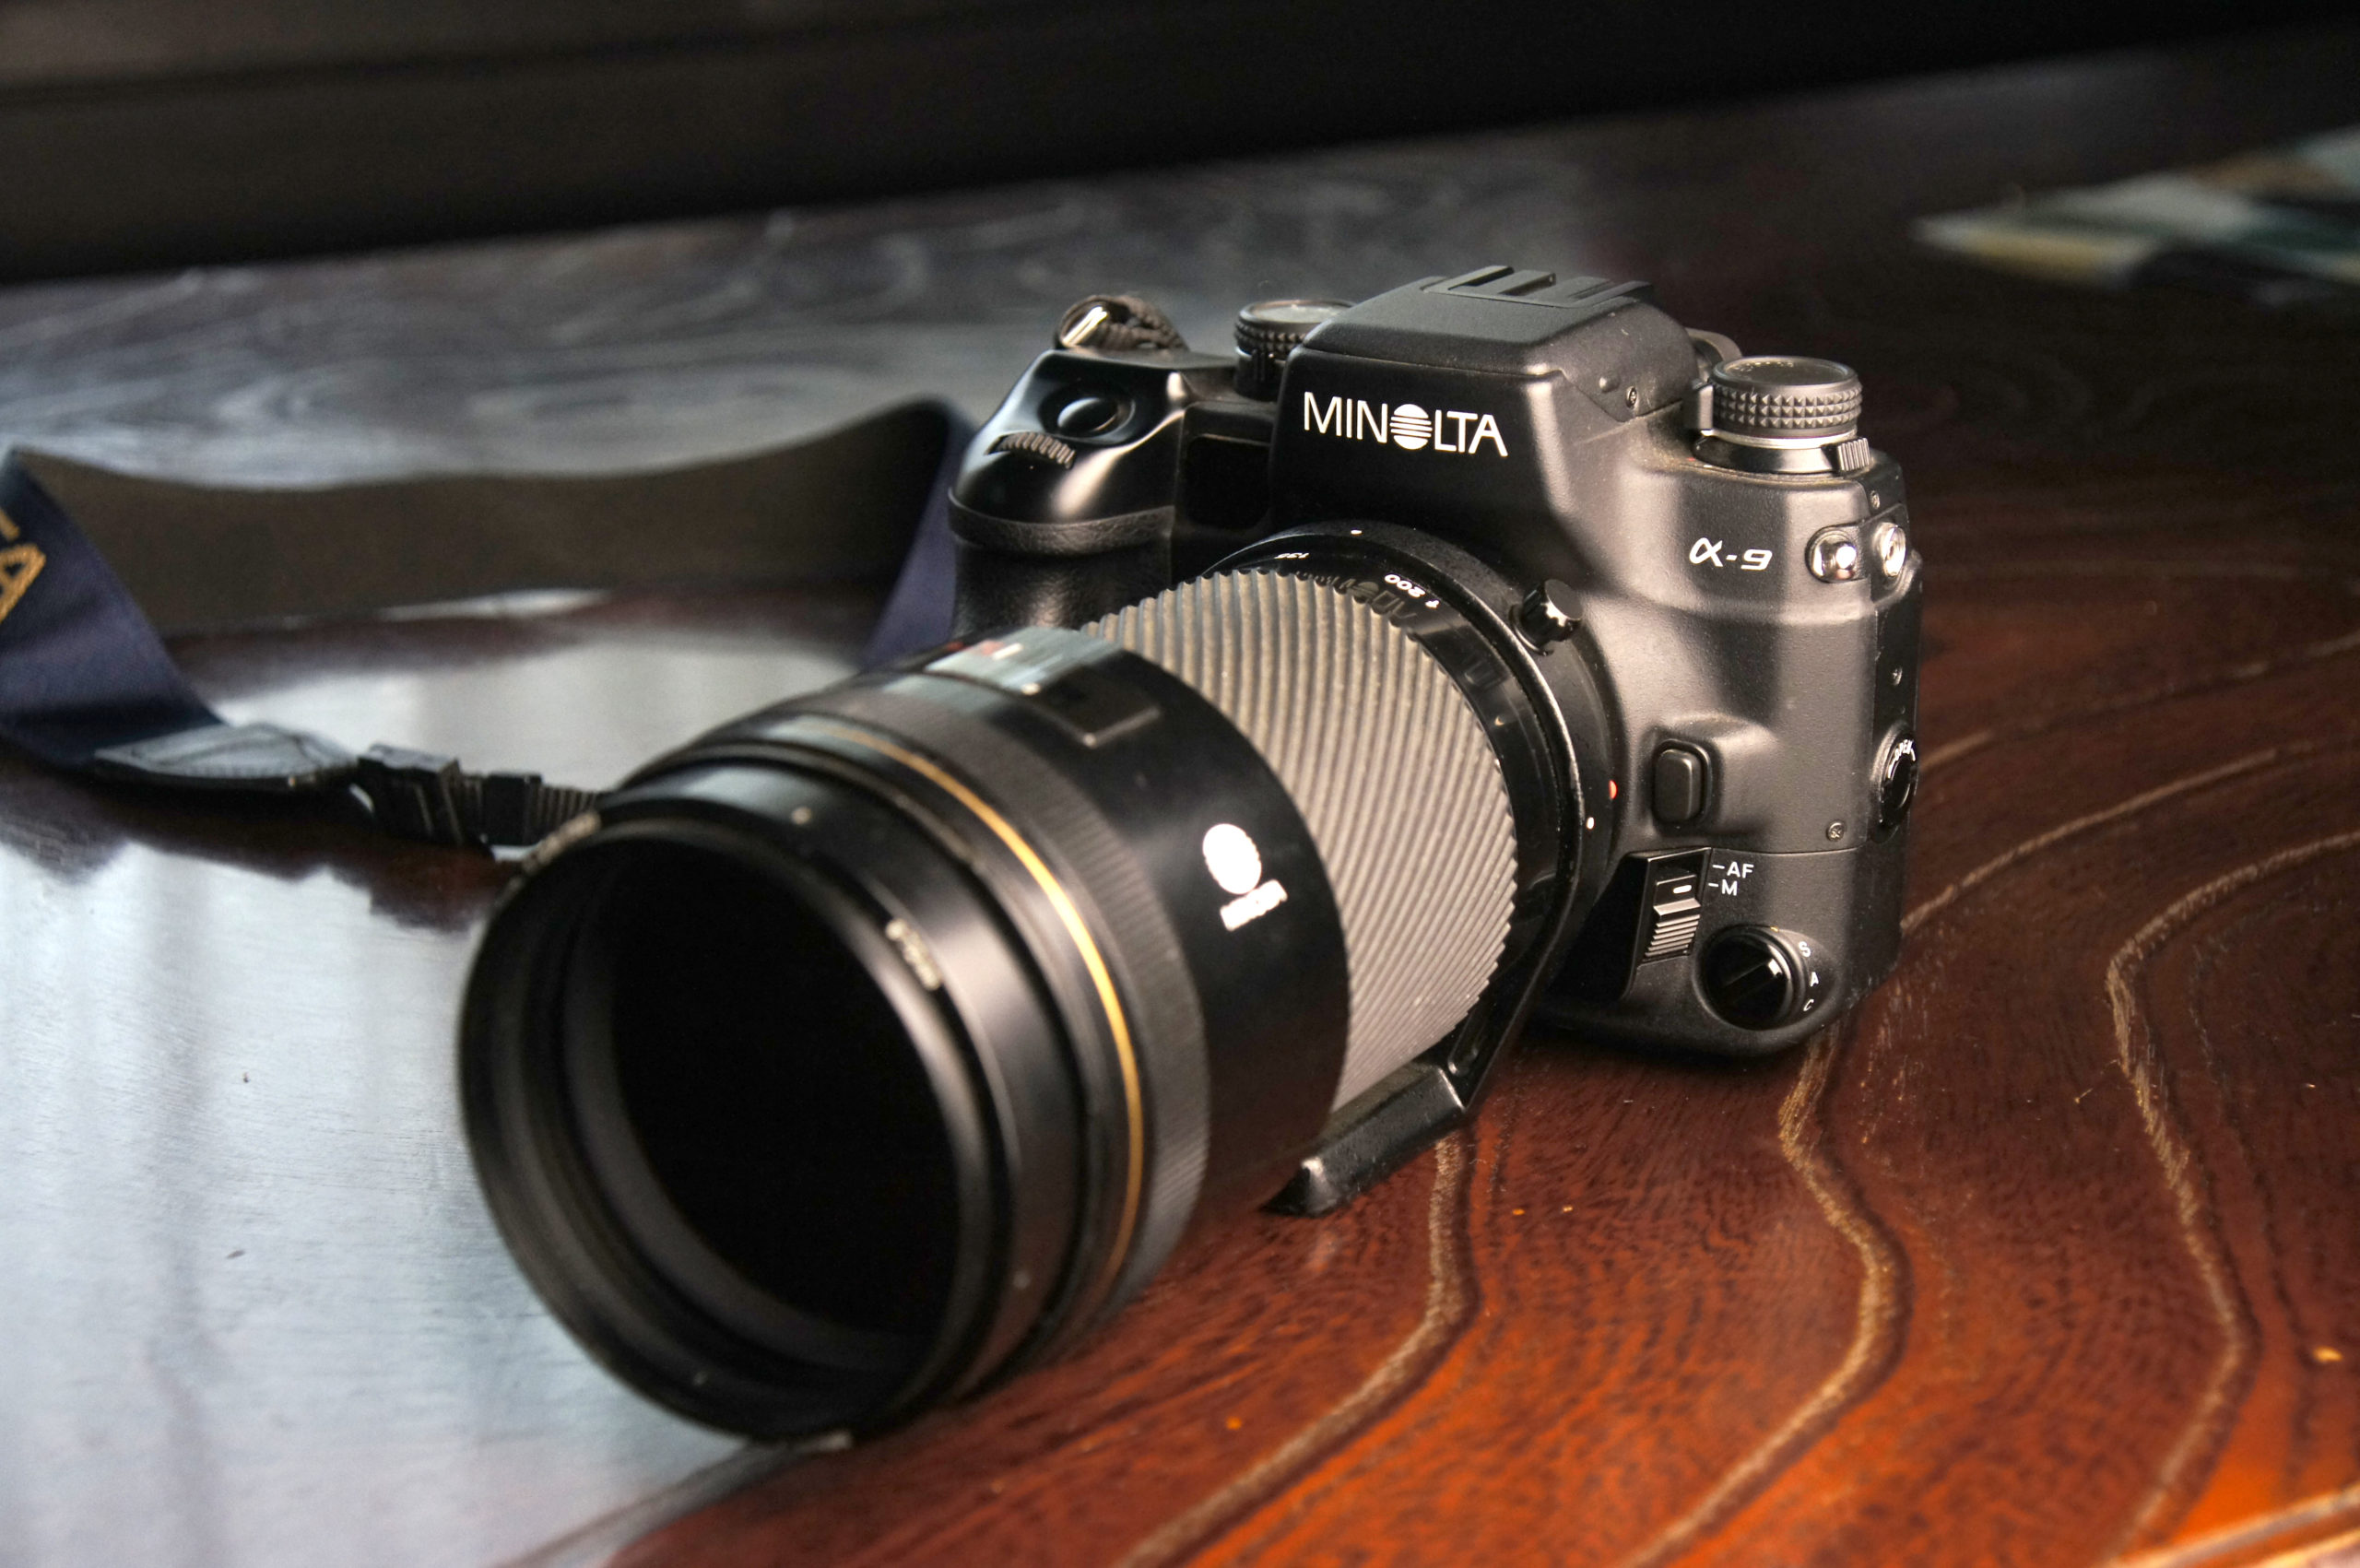 1年保証 ミノルタ α-9 レンズとストロボのセット - カメラ